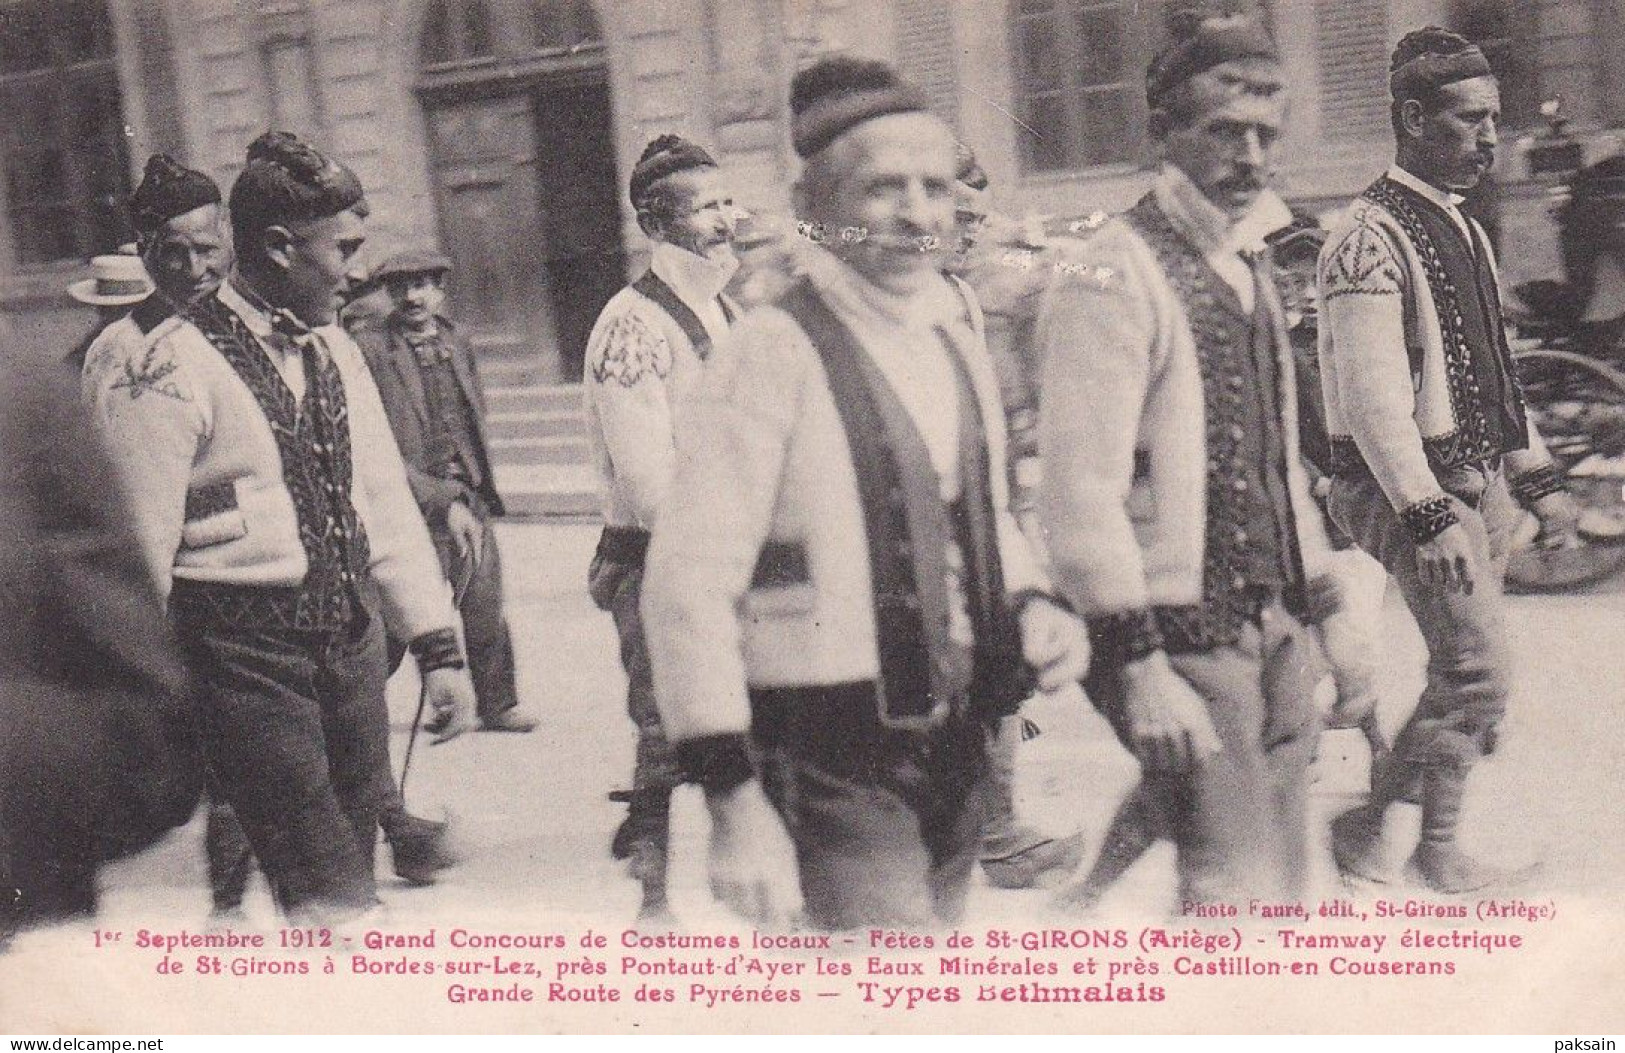 1er SEPTEMBRE 1912 GRAND CONCOURS DE COSTUMES LOCAUX FETES DE ST-GIRONS ARIEGE SAINT GIRONS - Saint Girons